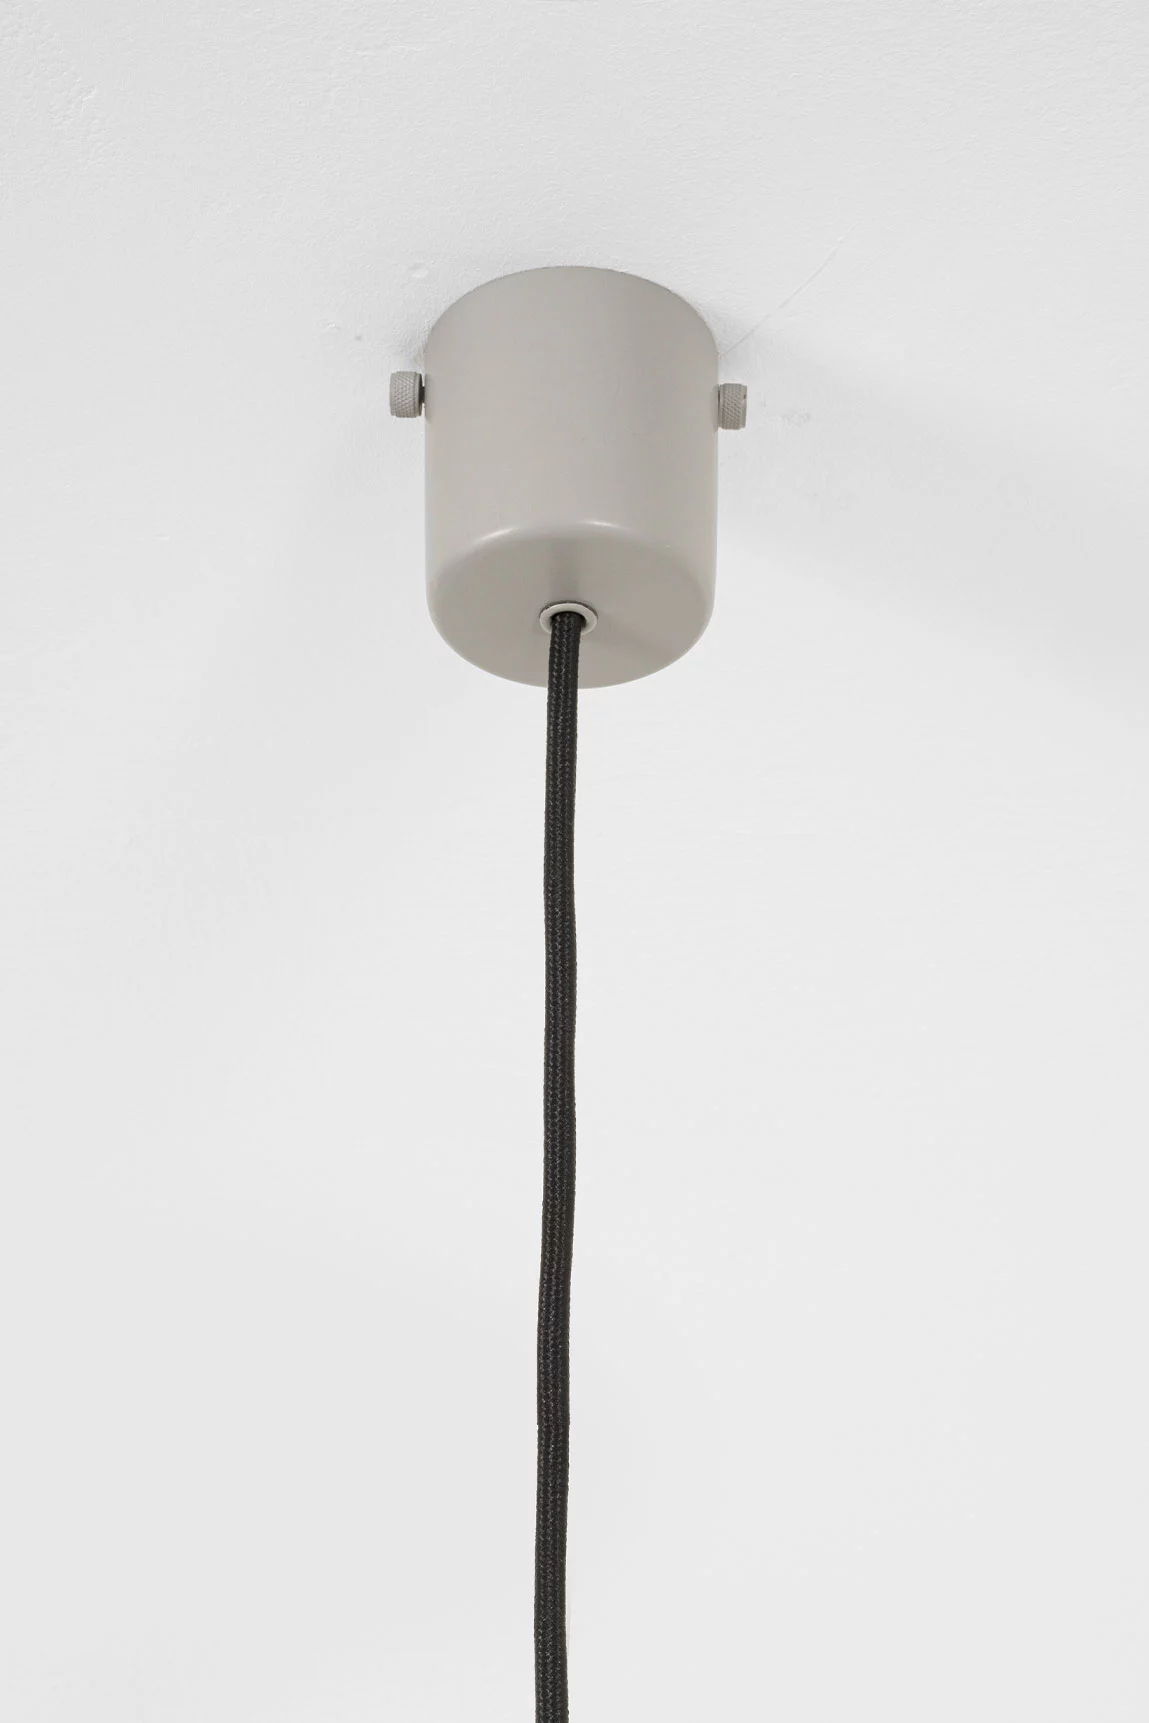 2079 - Gino Sarfatti - Pendant light - Galerie kreo